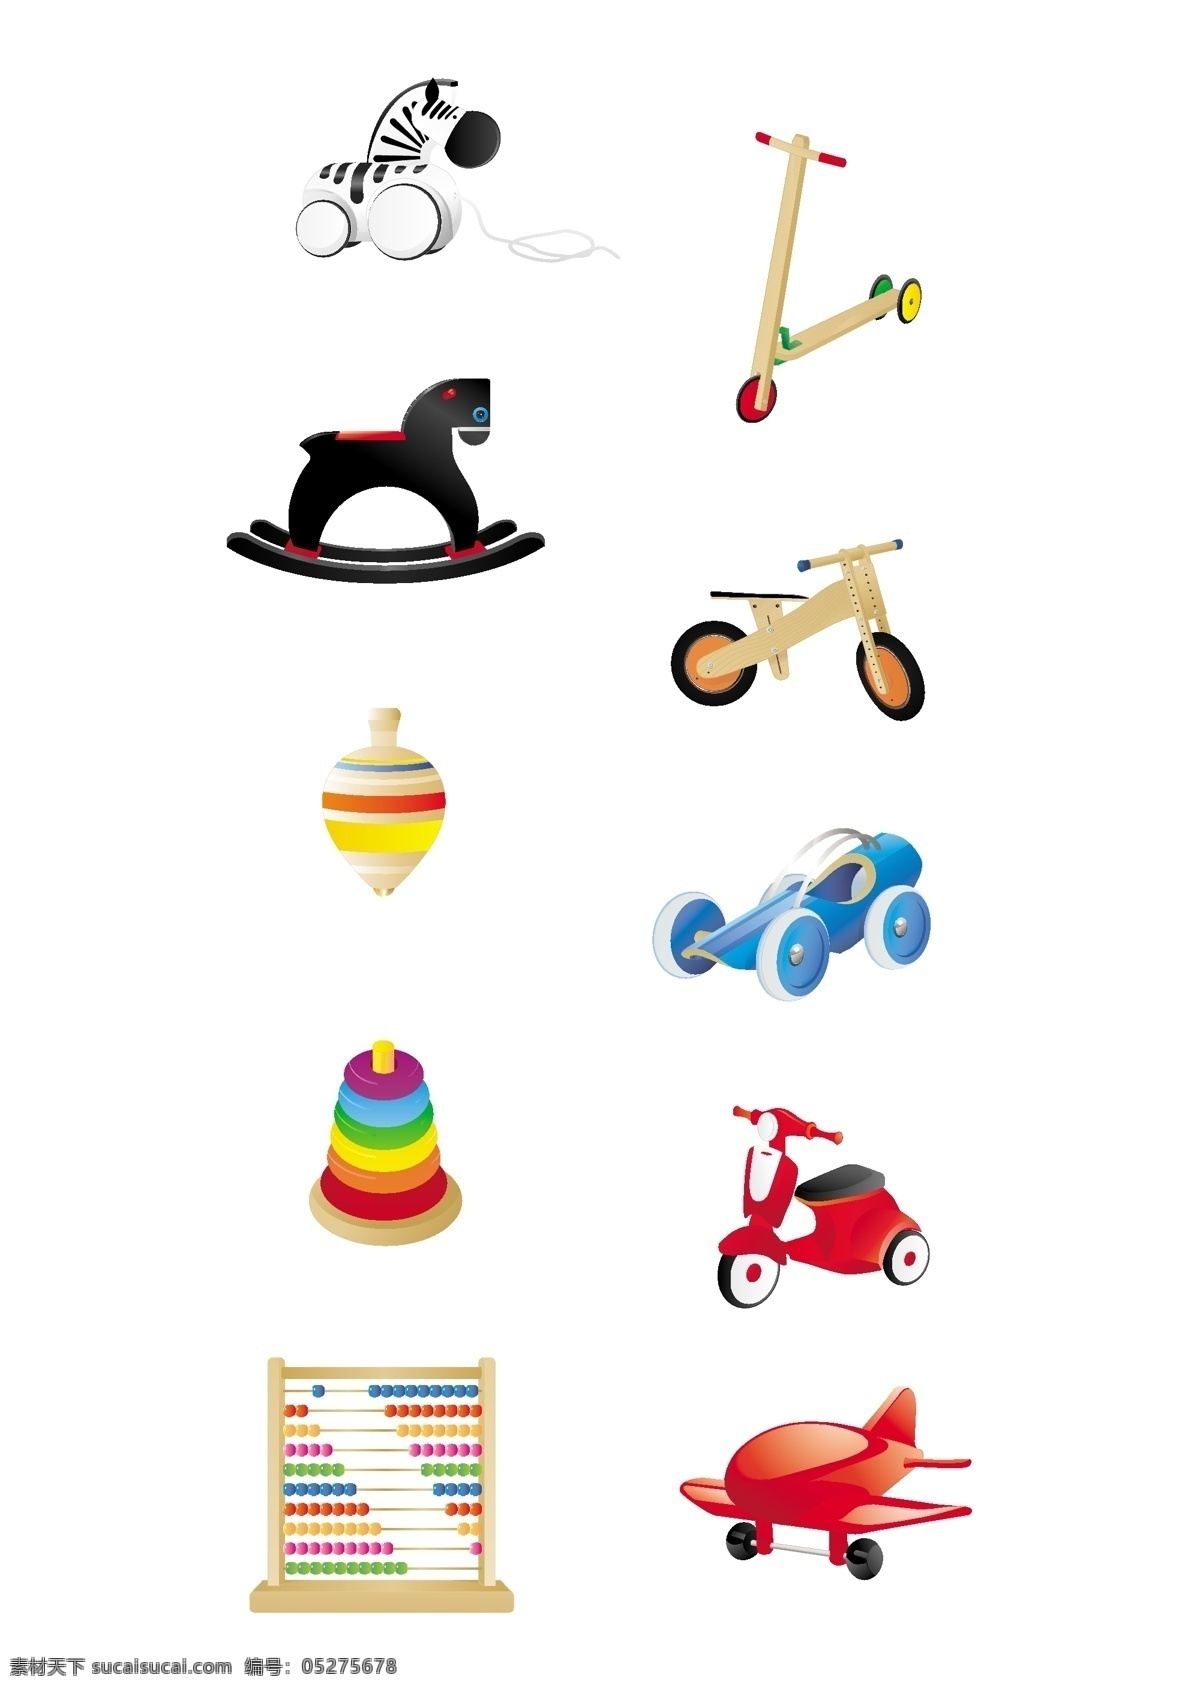 儿童玩具 图标 矢量 free icon set 滑板车 六一儿童节 明 木马 矢量素材 矢量图标 陀螺 玩具 珠算 玩具车 玩具飞机 toys a designed 其他矢量图